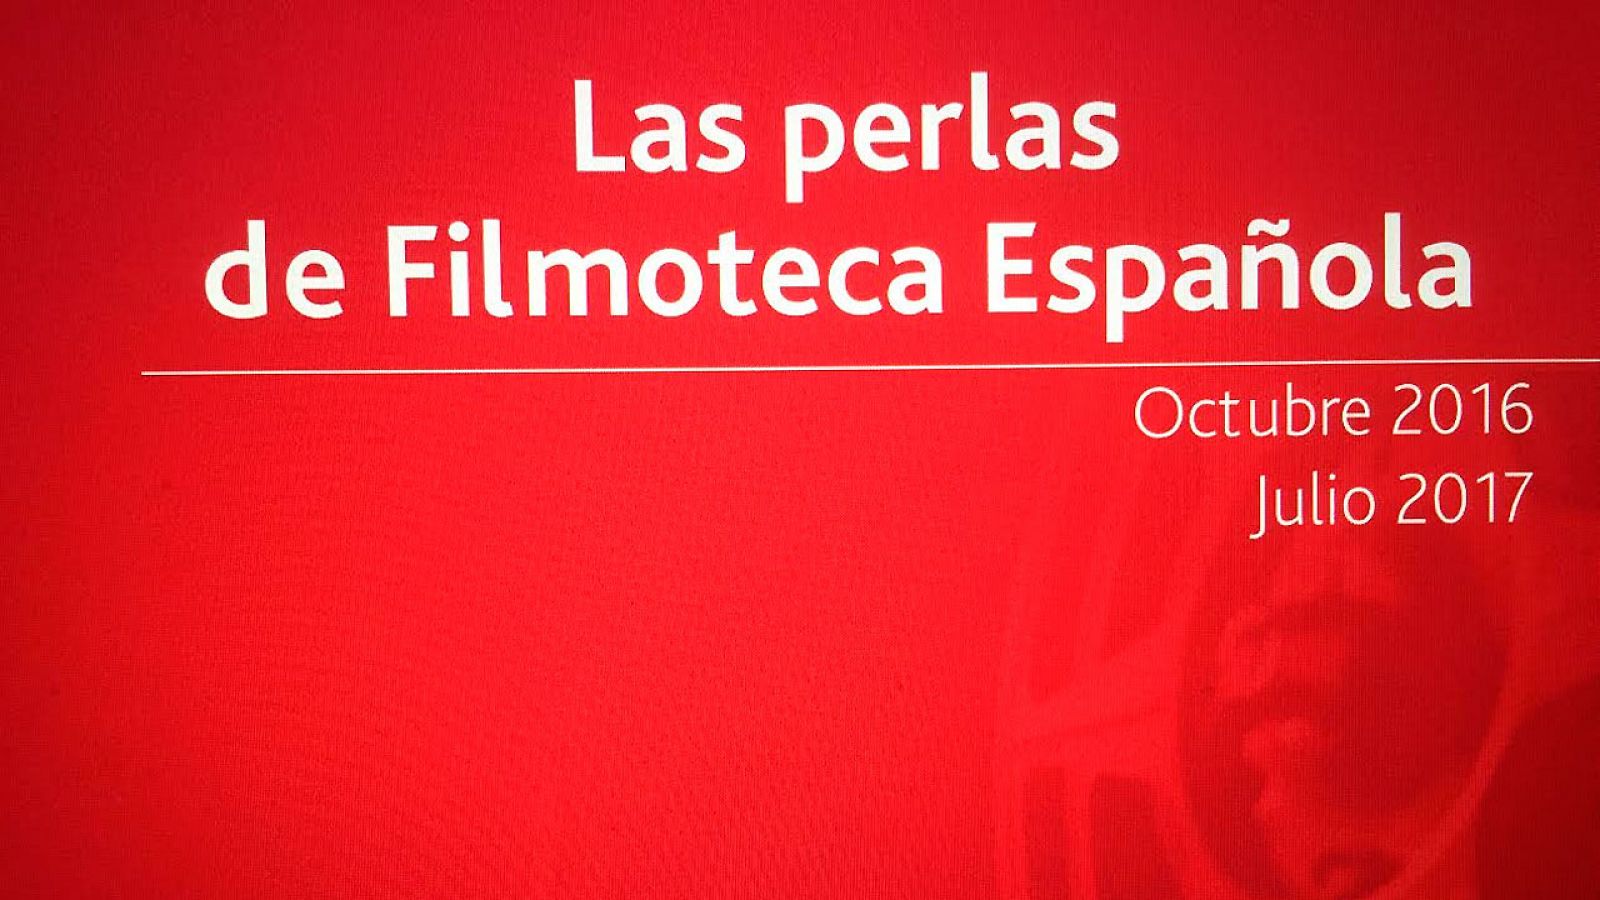 El ciclo Las perlas de Filmoteca Española y Radio 3